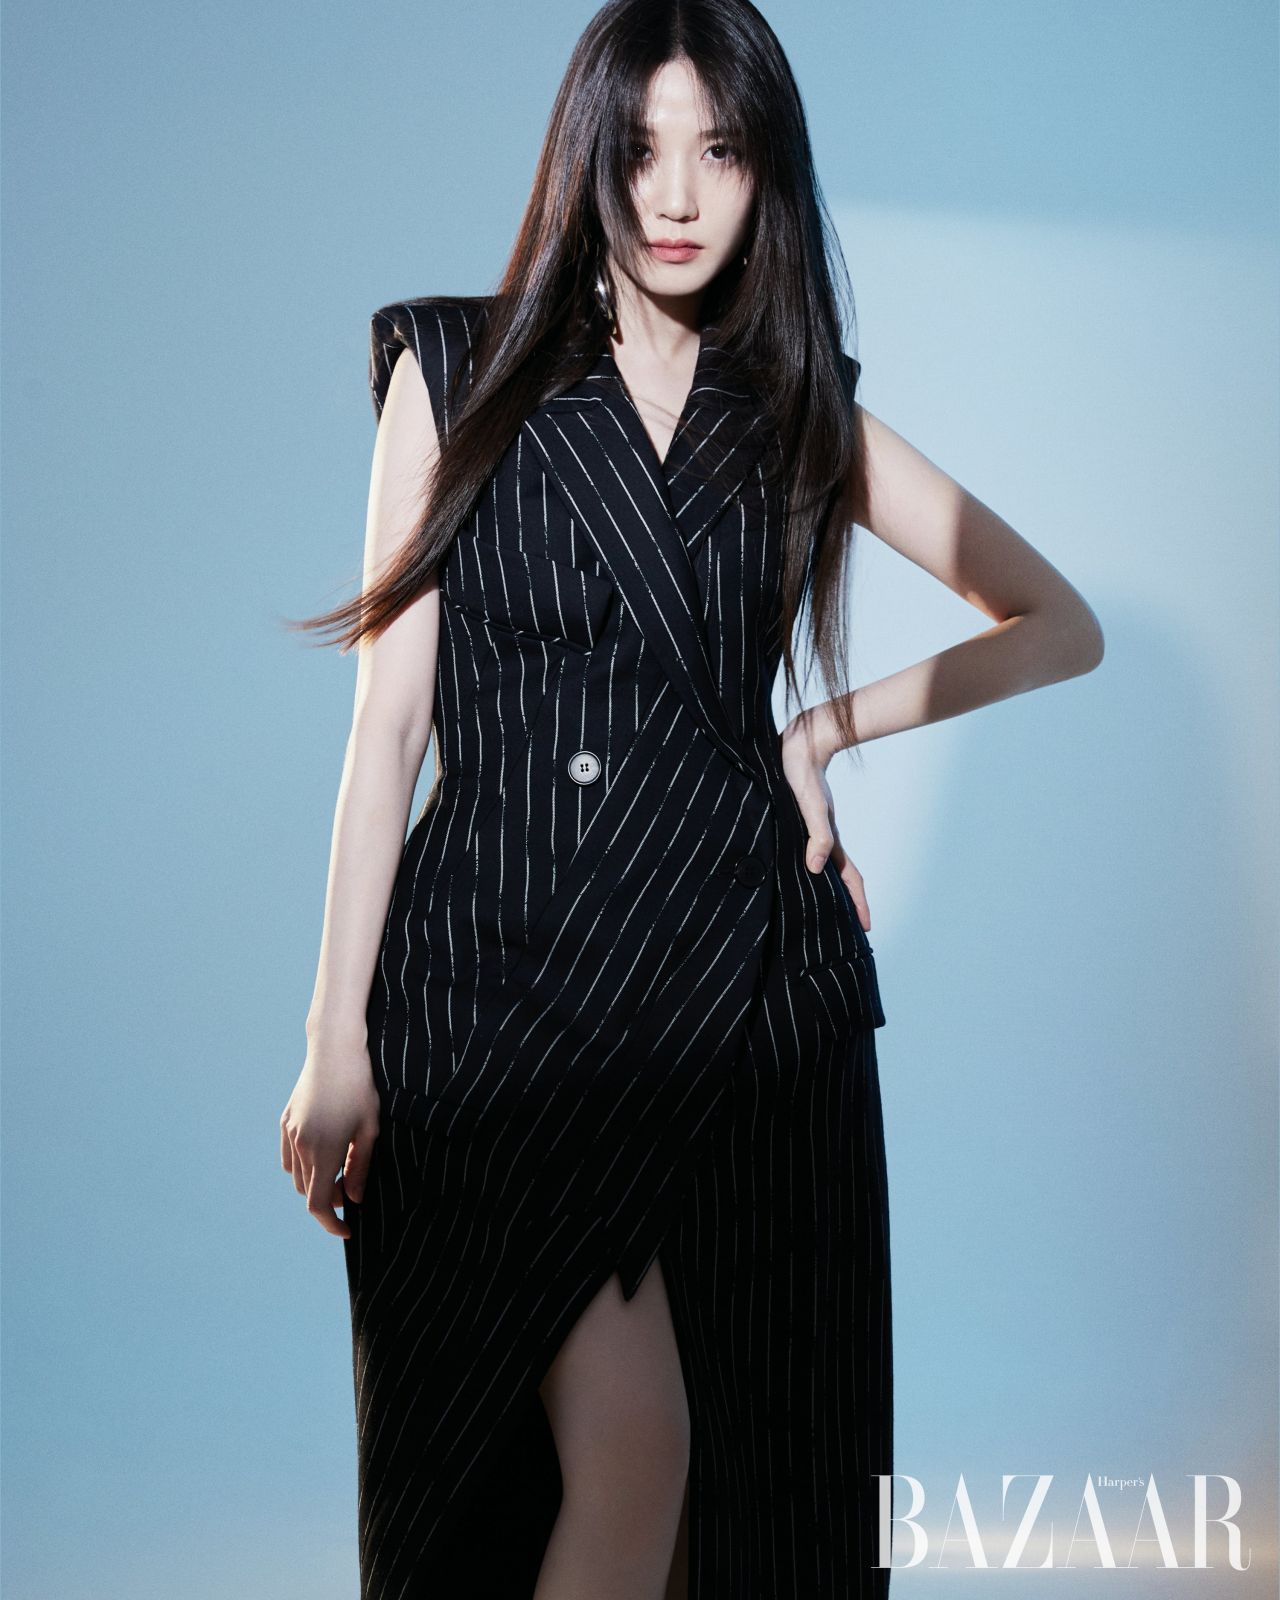 Park Eun Bin - Photo Shoot for Harper's Bazaar Magazine Korea November ...